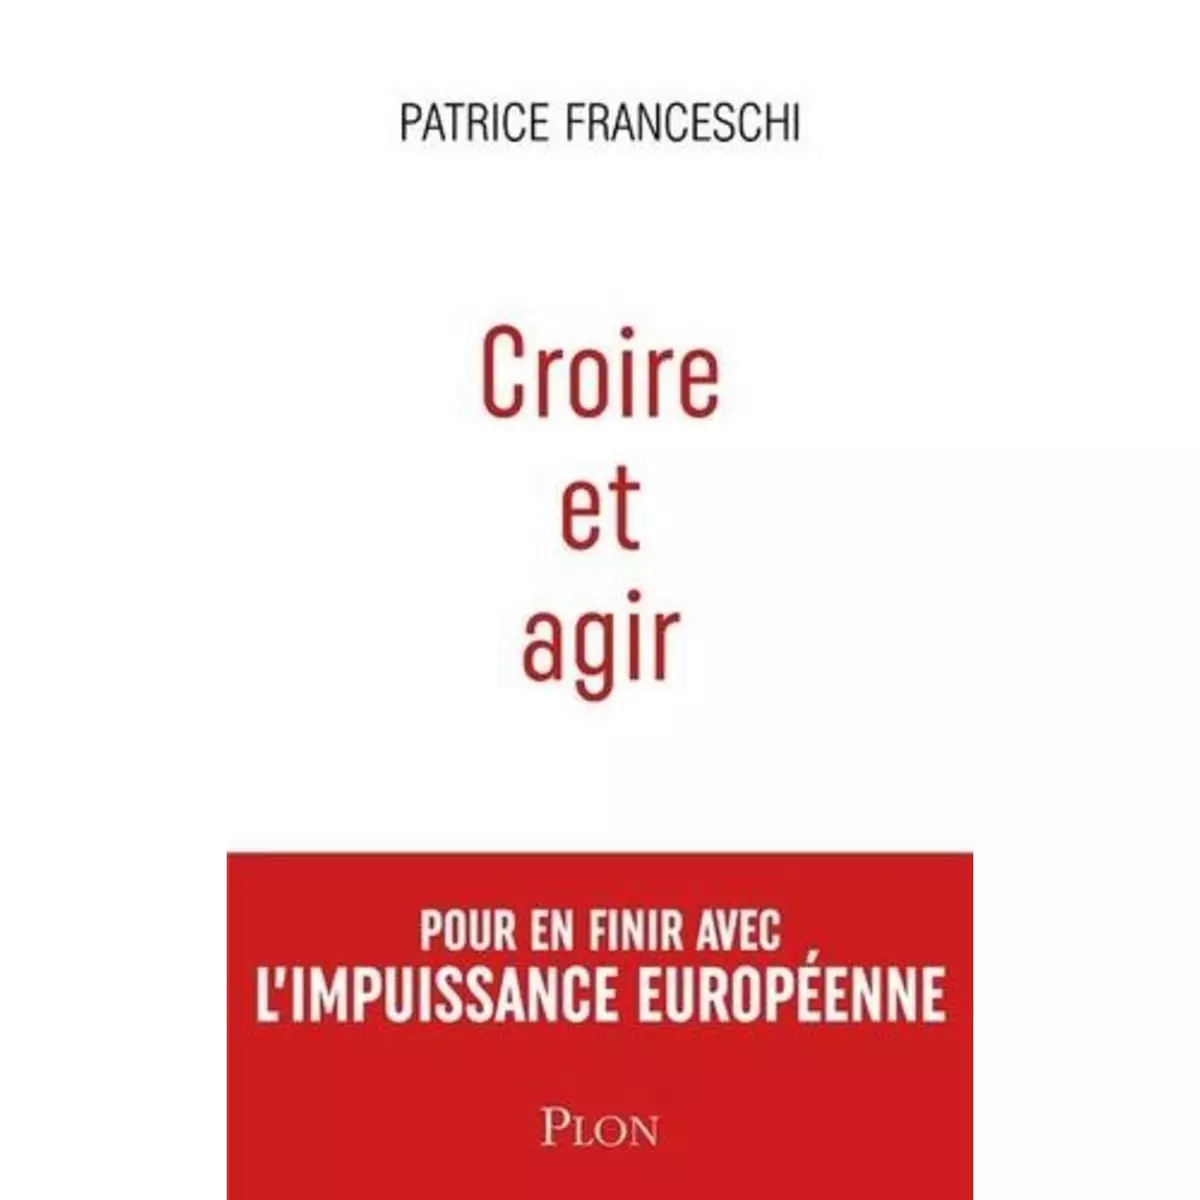  CROIRE ET AGIR. ETATS-UNIS D'EUROPE CONTRE UNION EUROPEENNE, Franceschi Patrice